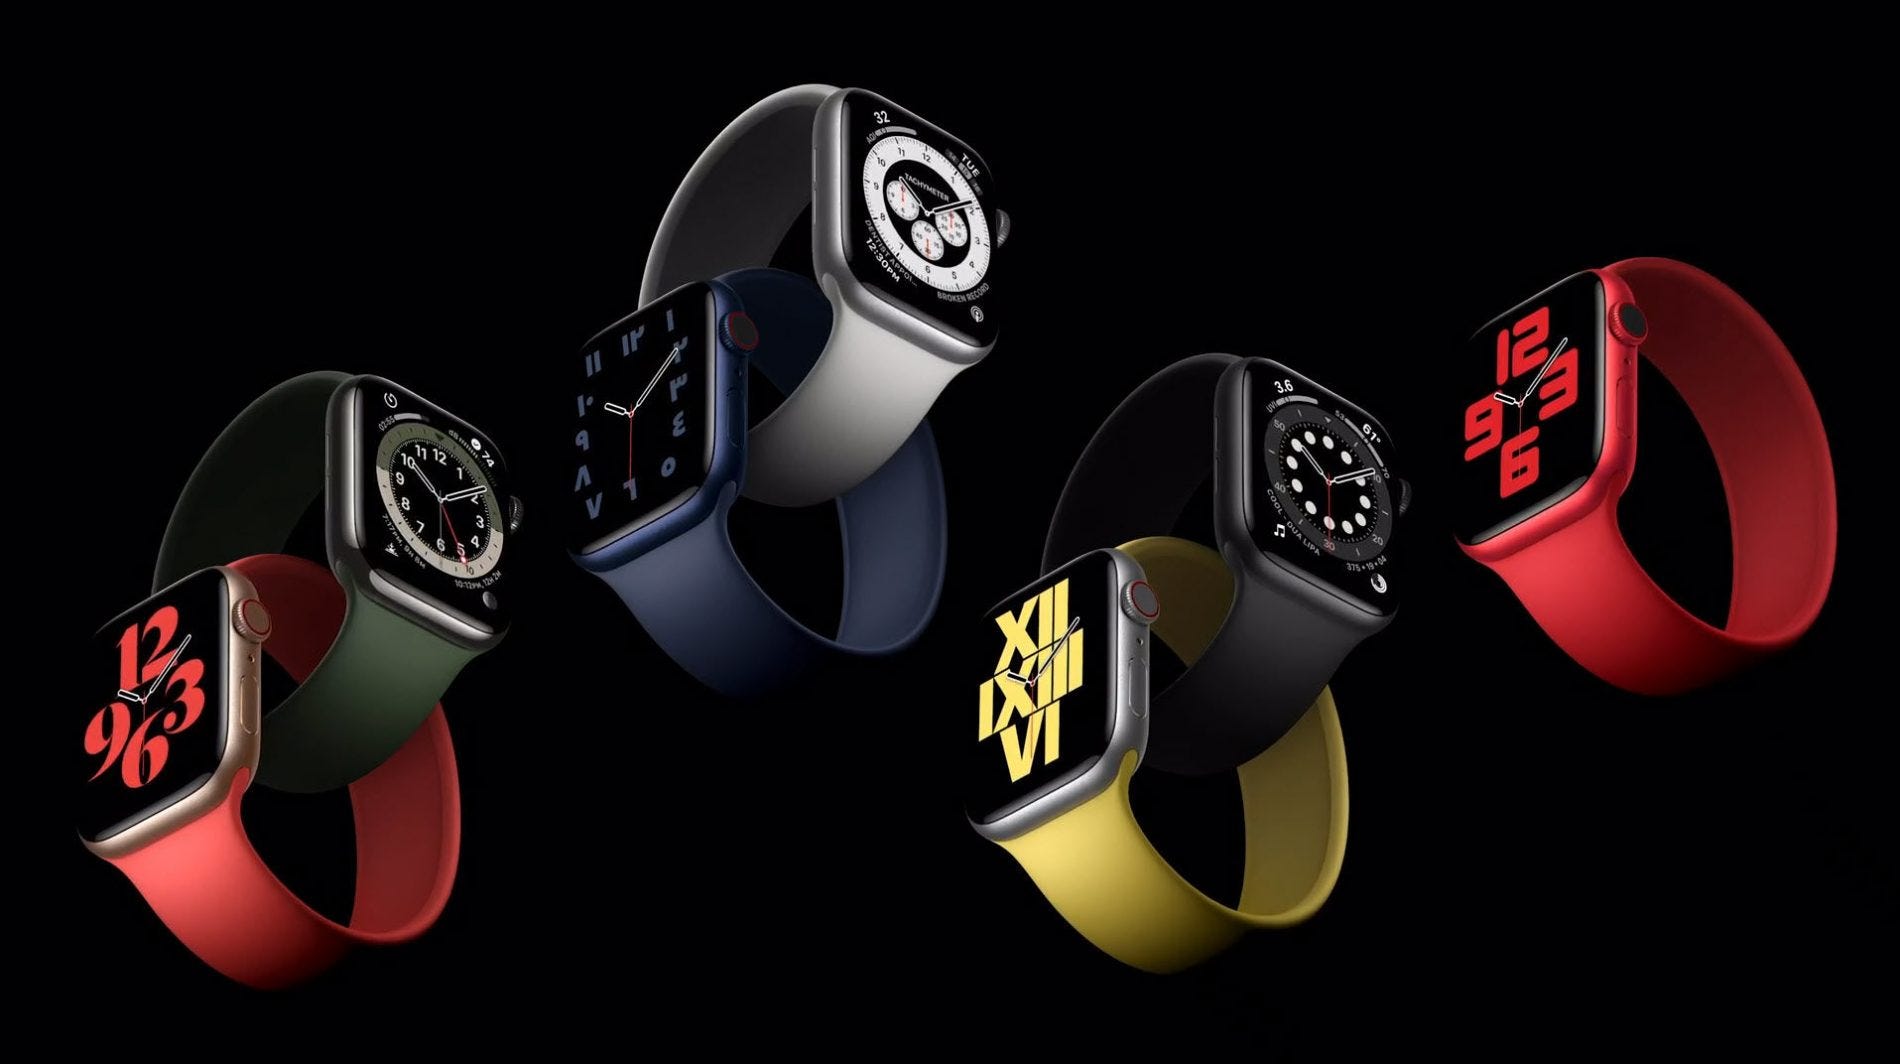 La plus élégante : Apple Watch Series 6